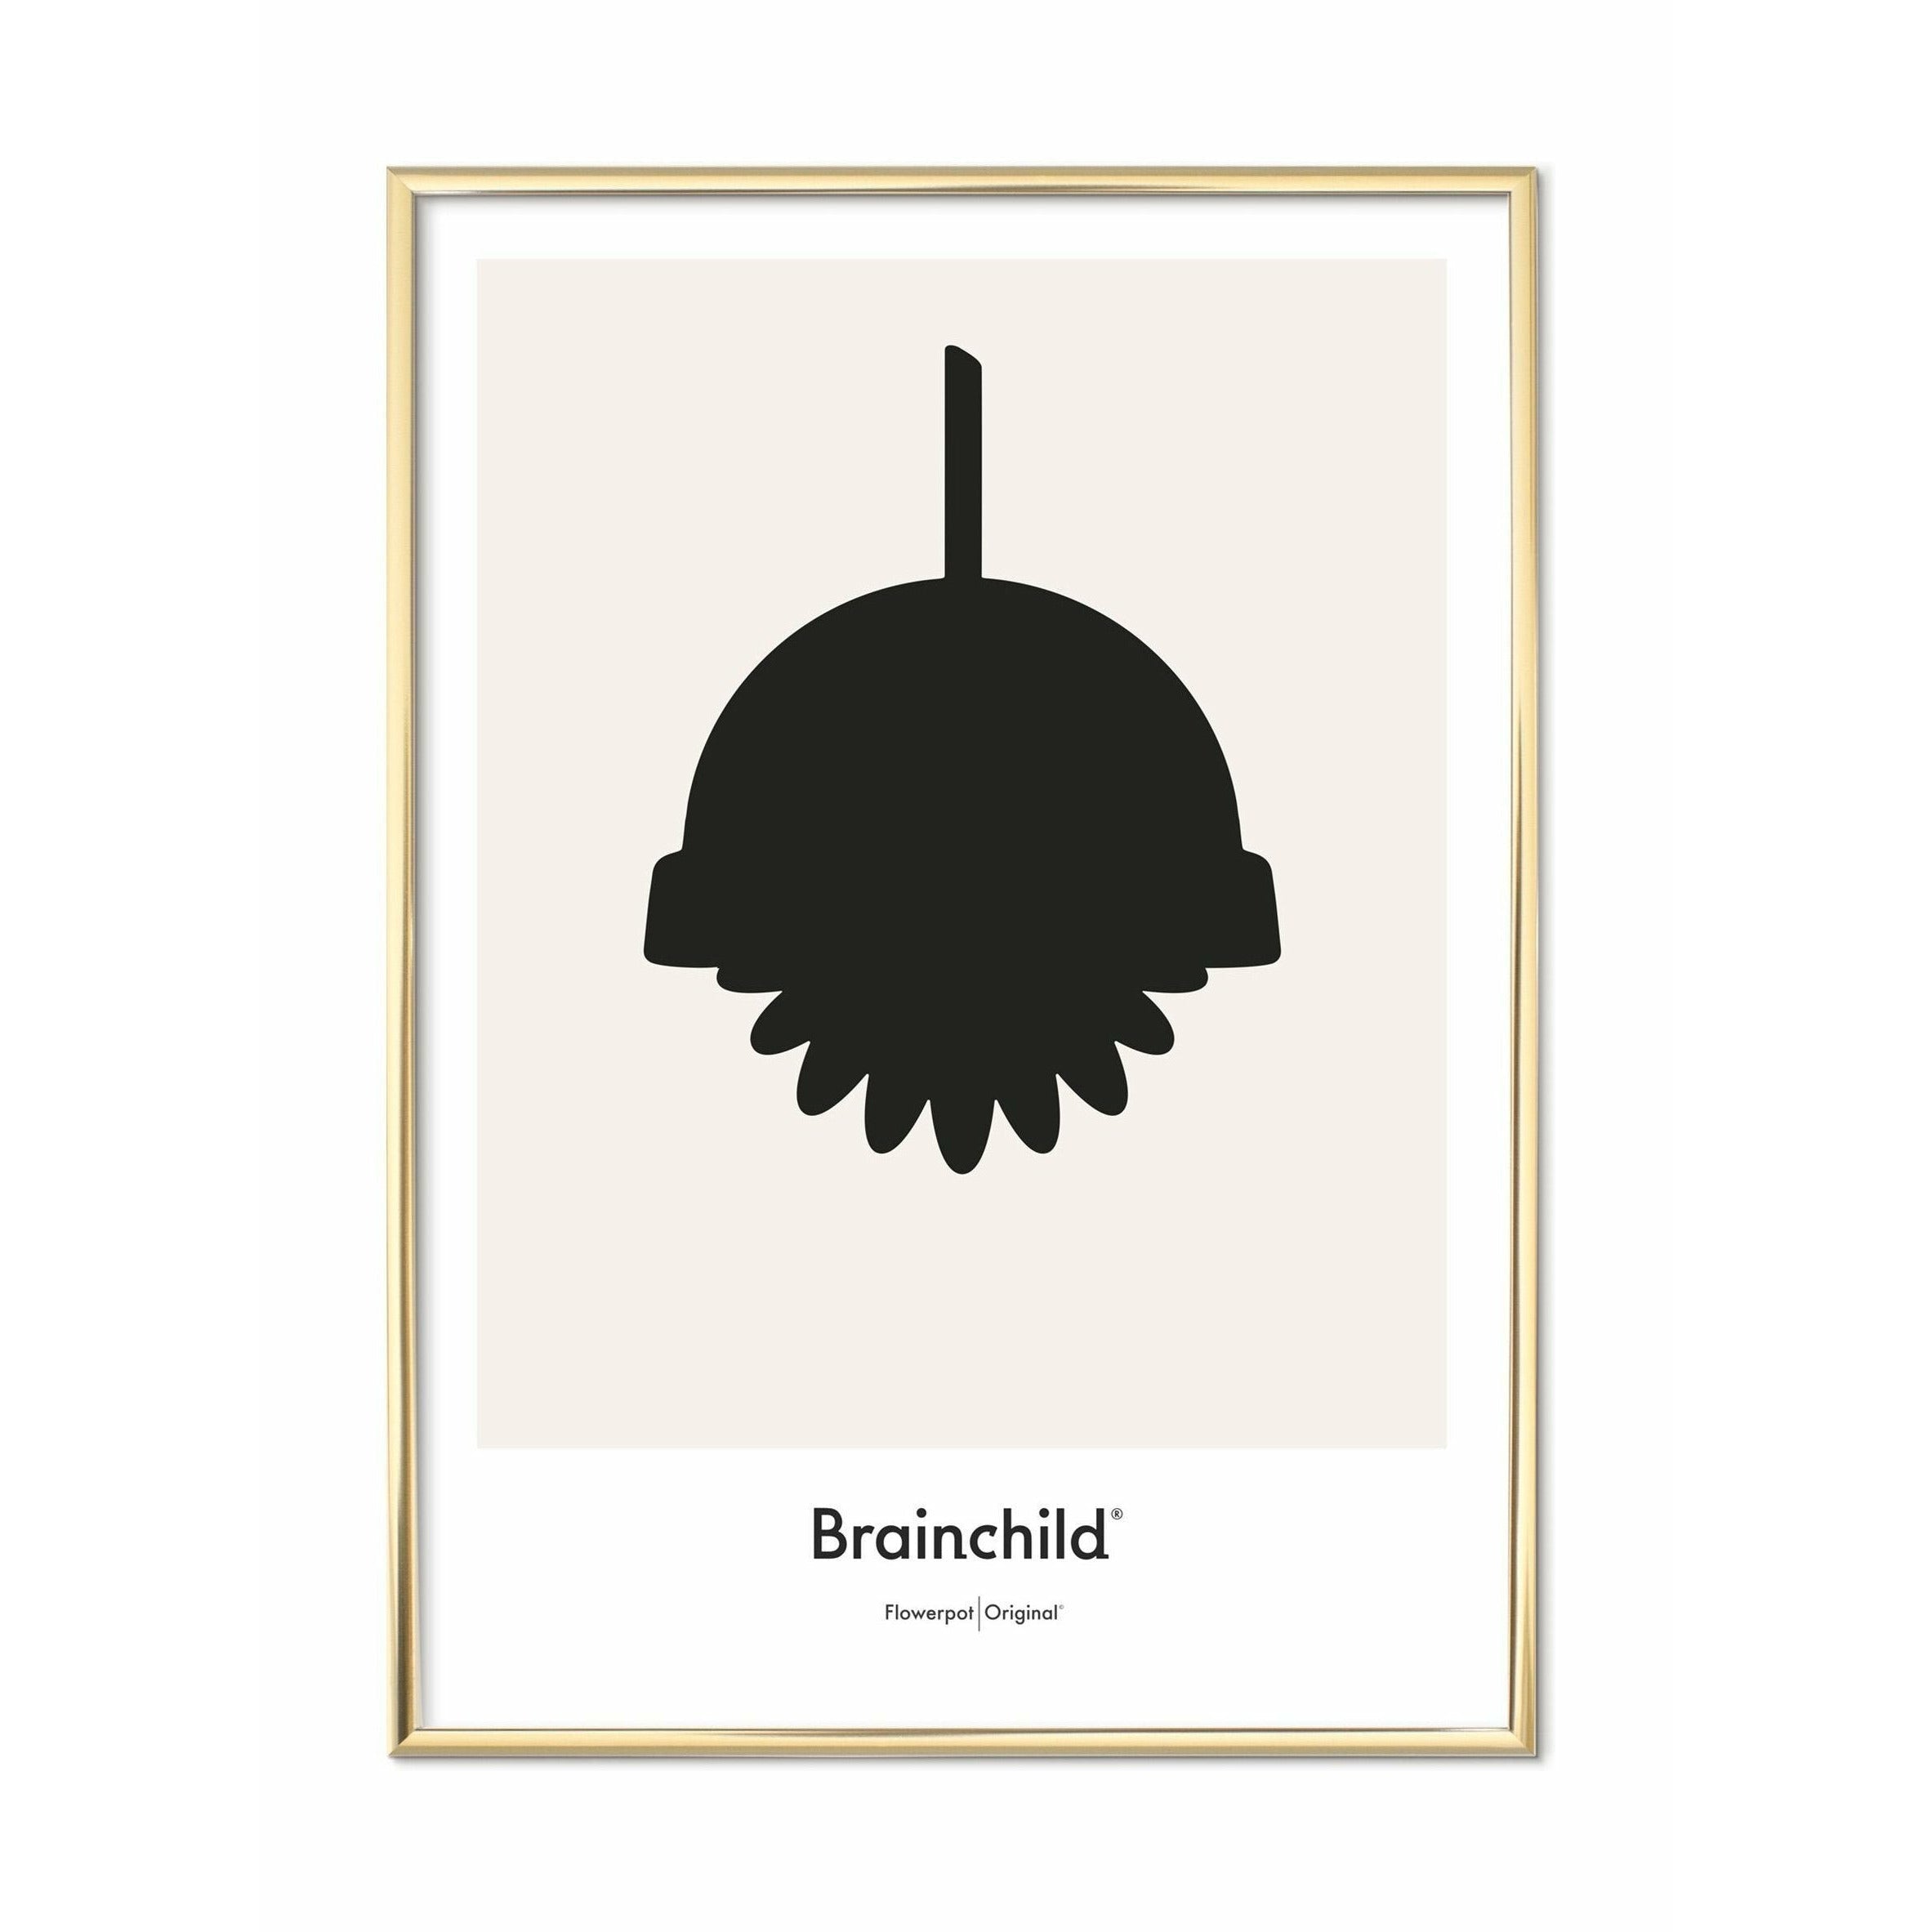 Brainchild Bloemenpotontwerppictogram Poster, messing gekleurd frame 30 x40 cm, grijs